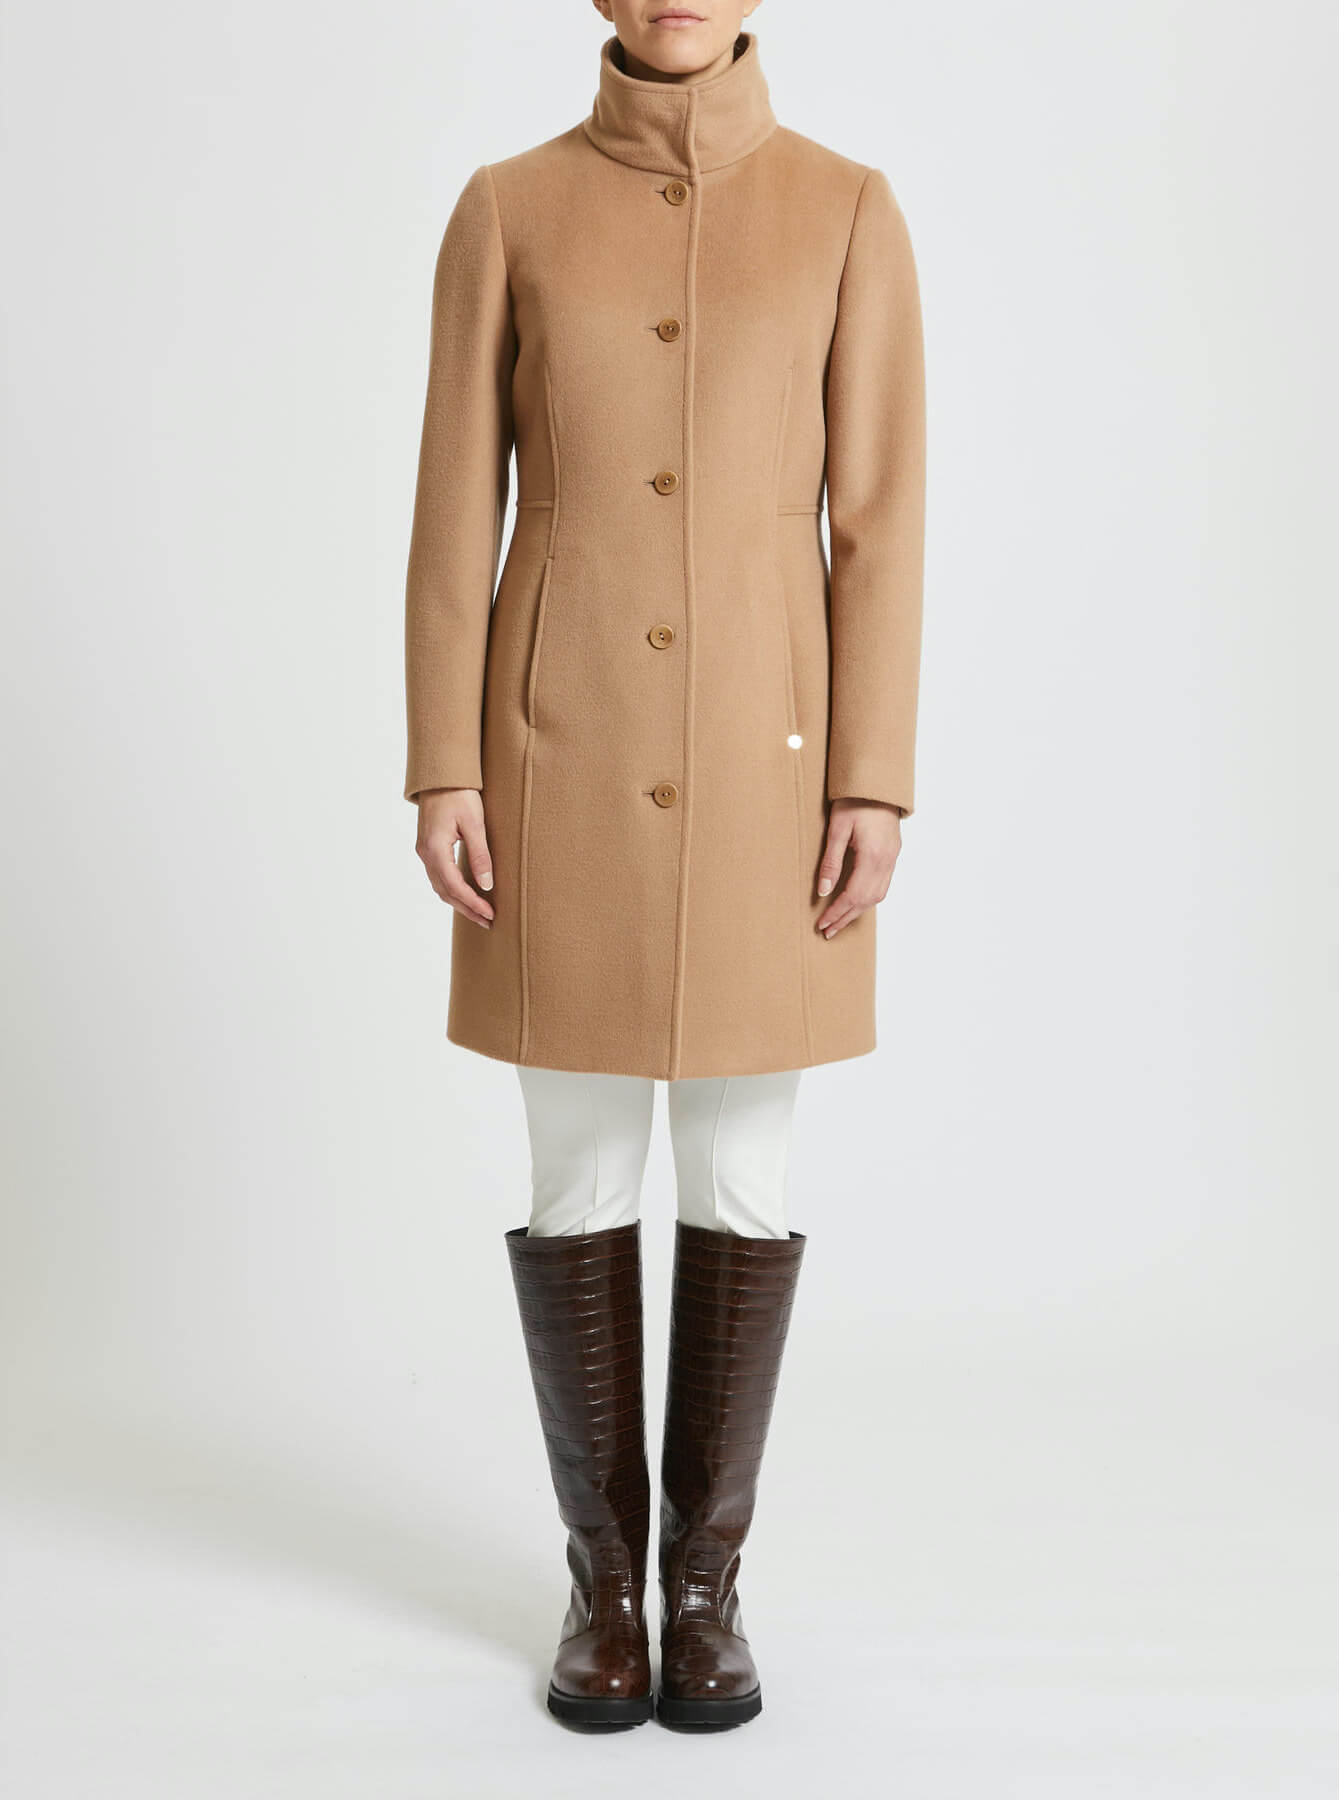 PENNYBLACK cappotto donna slim lana LIZ 20140223 5 CAMMELLO inverno 20 –